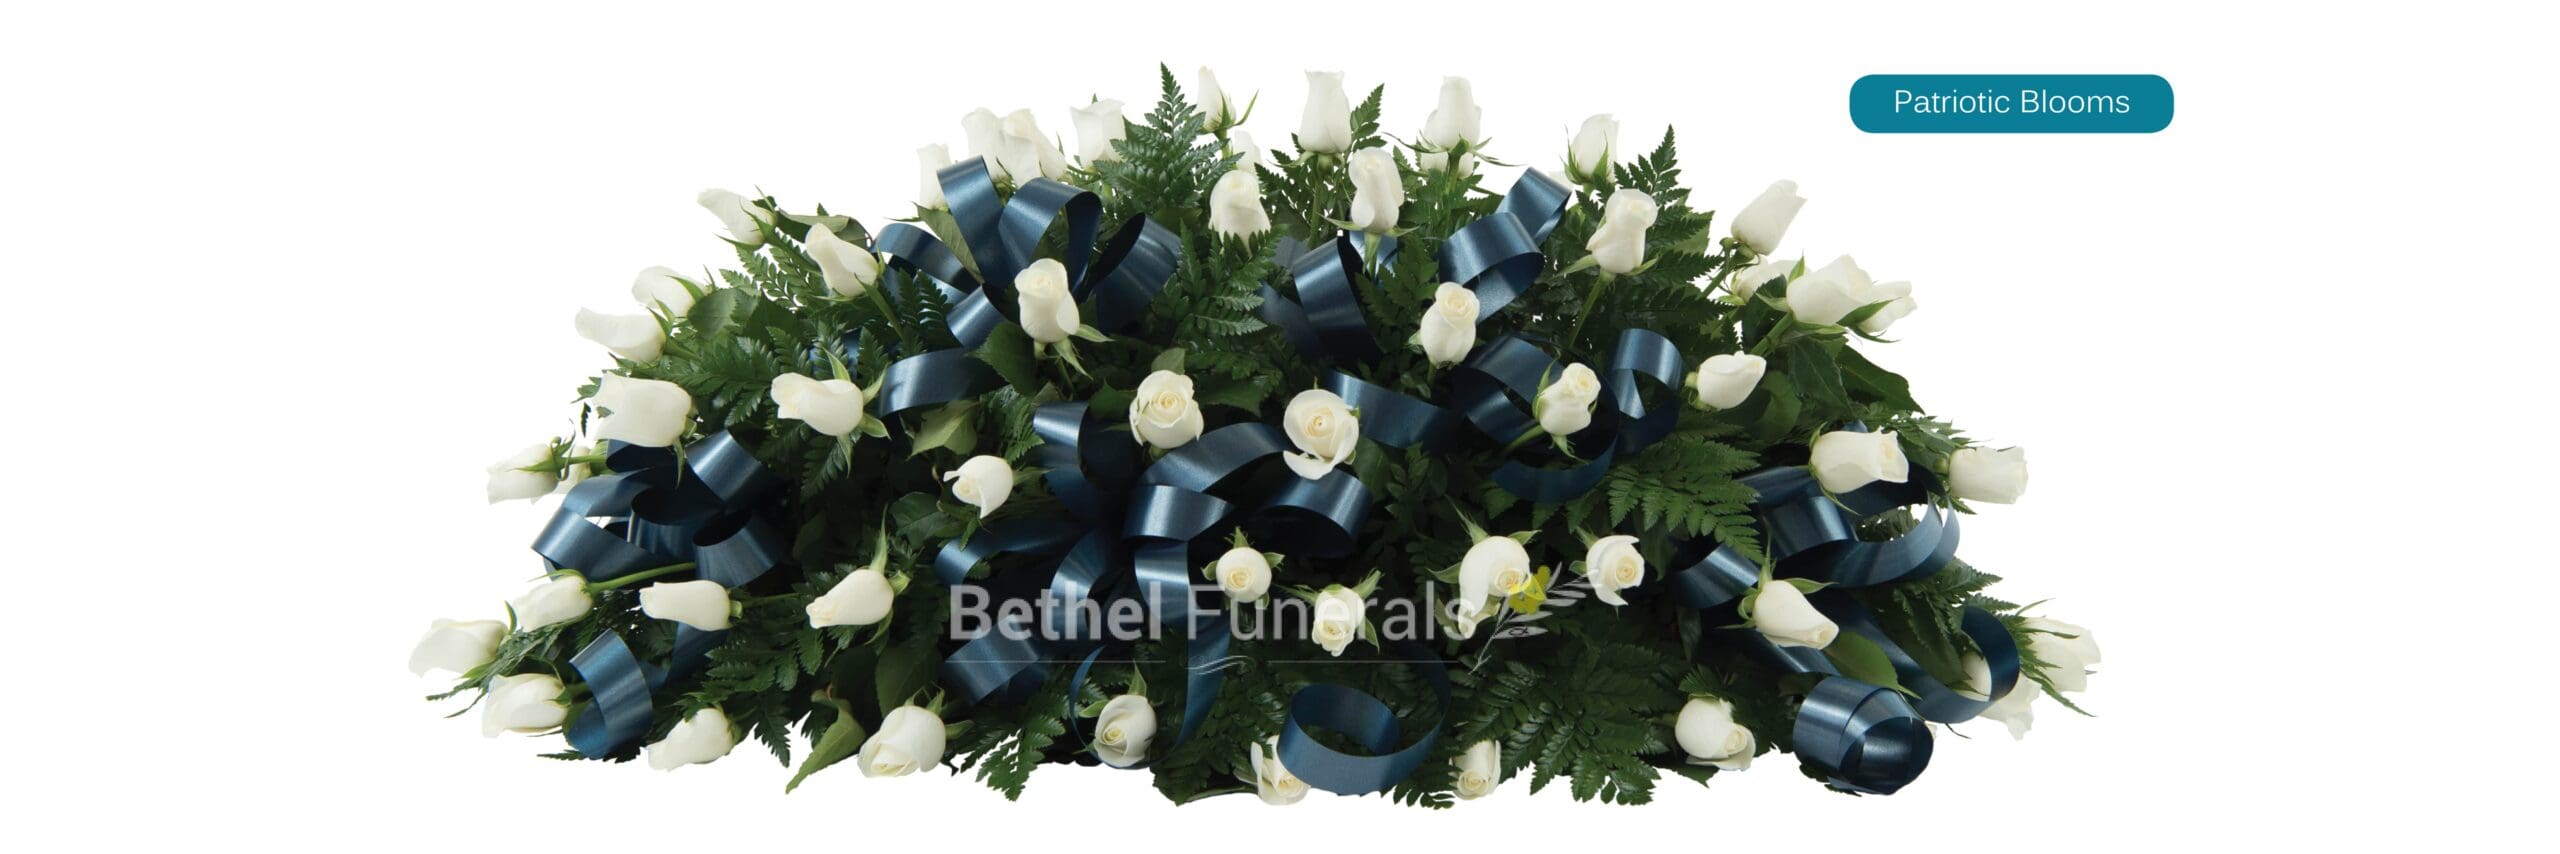 patriotic blooms funeral flowers